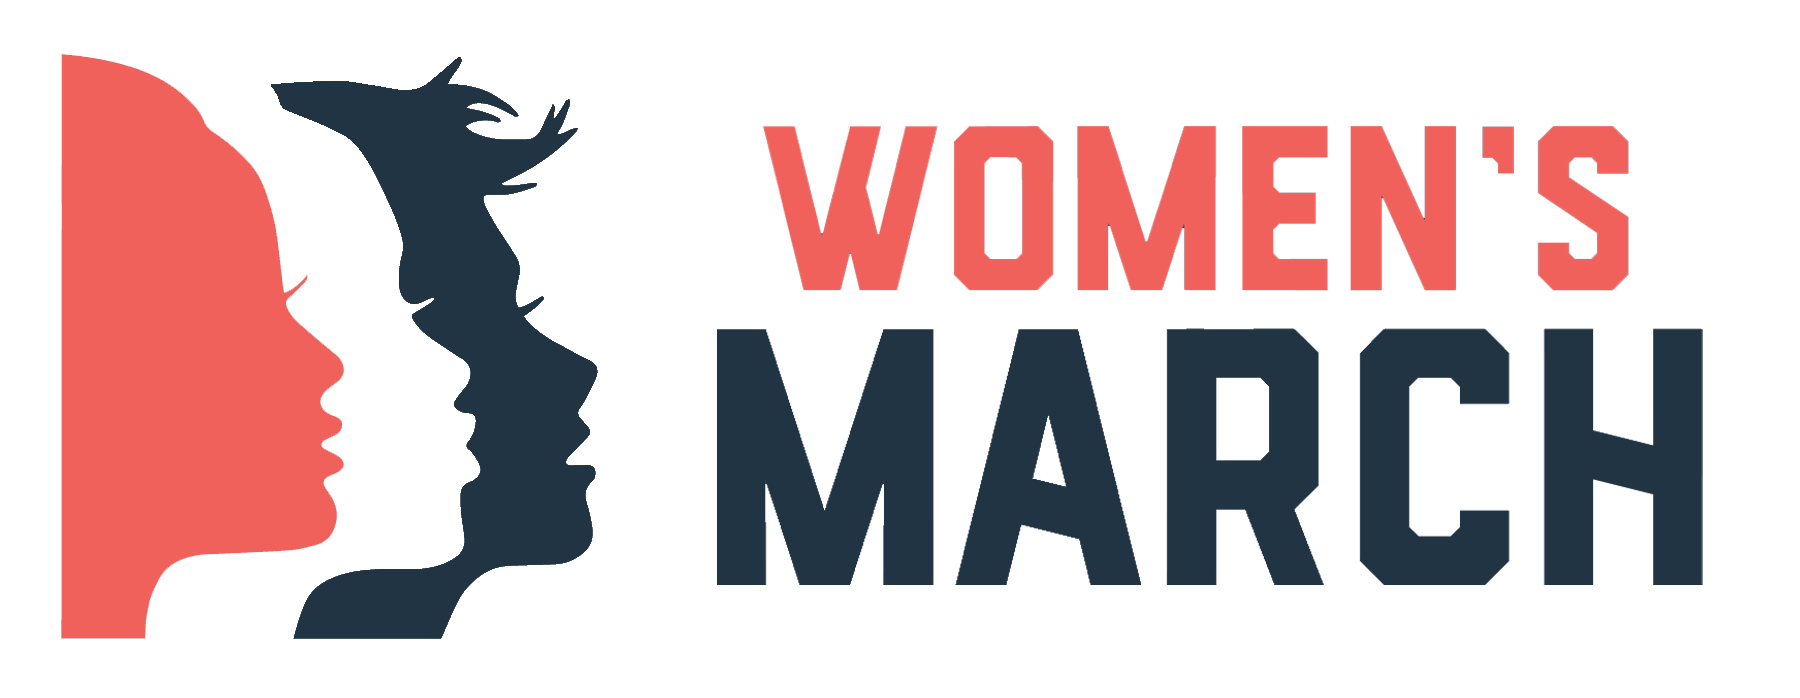 Women's March logo